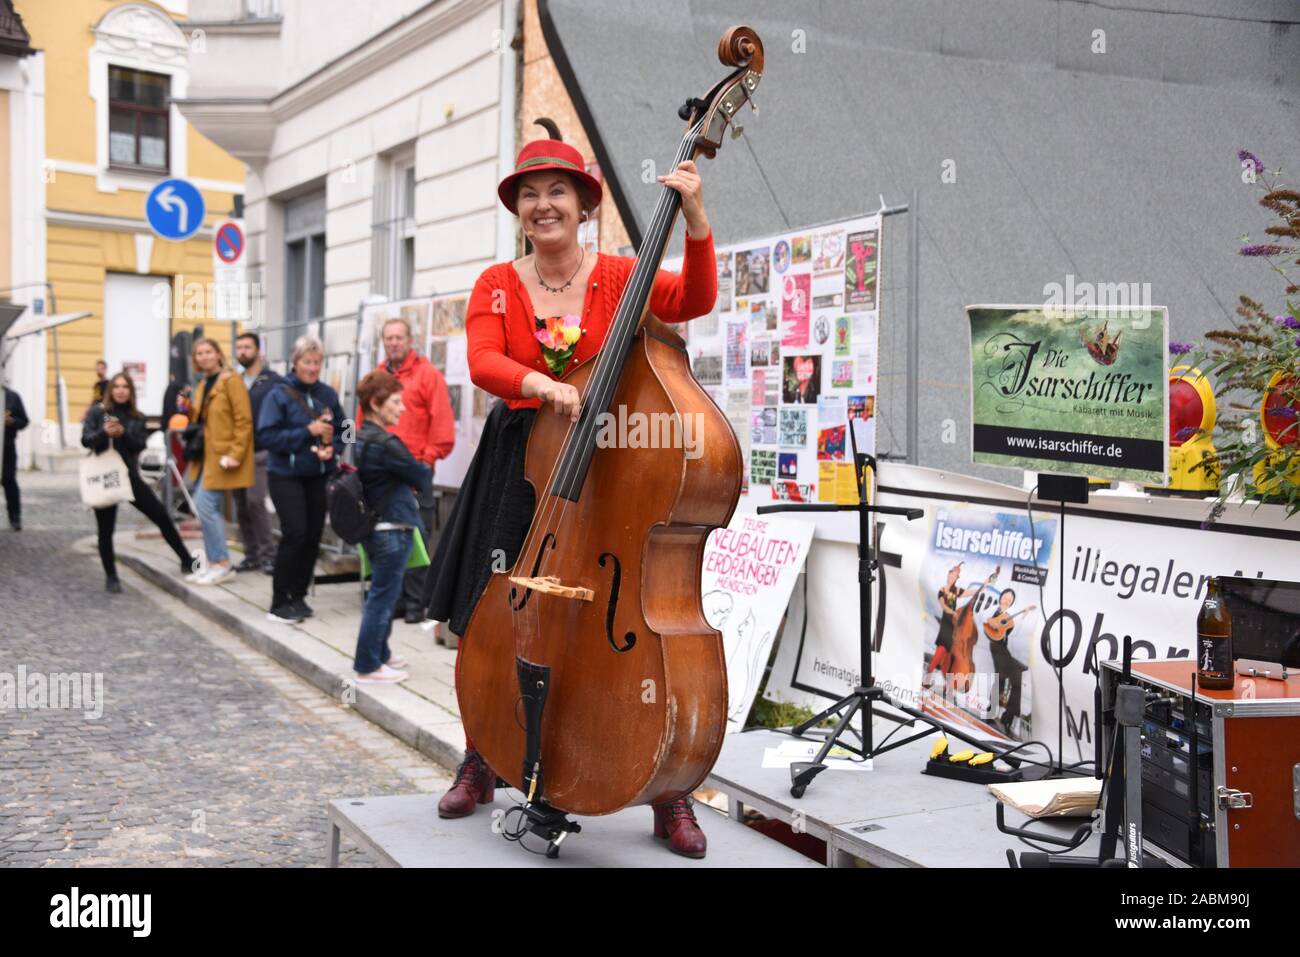 Performance de l'Isar bateliers à l'arrondissement festival 'Ois Giasing' en face de la chambre d'horloger en Giesing. [Traduction automatique] Banque D'Images